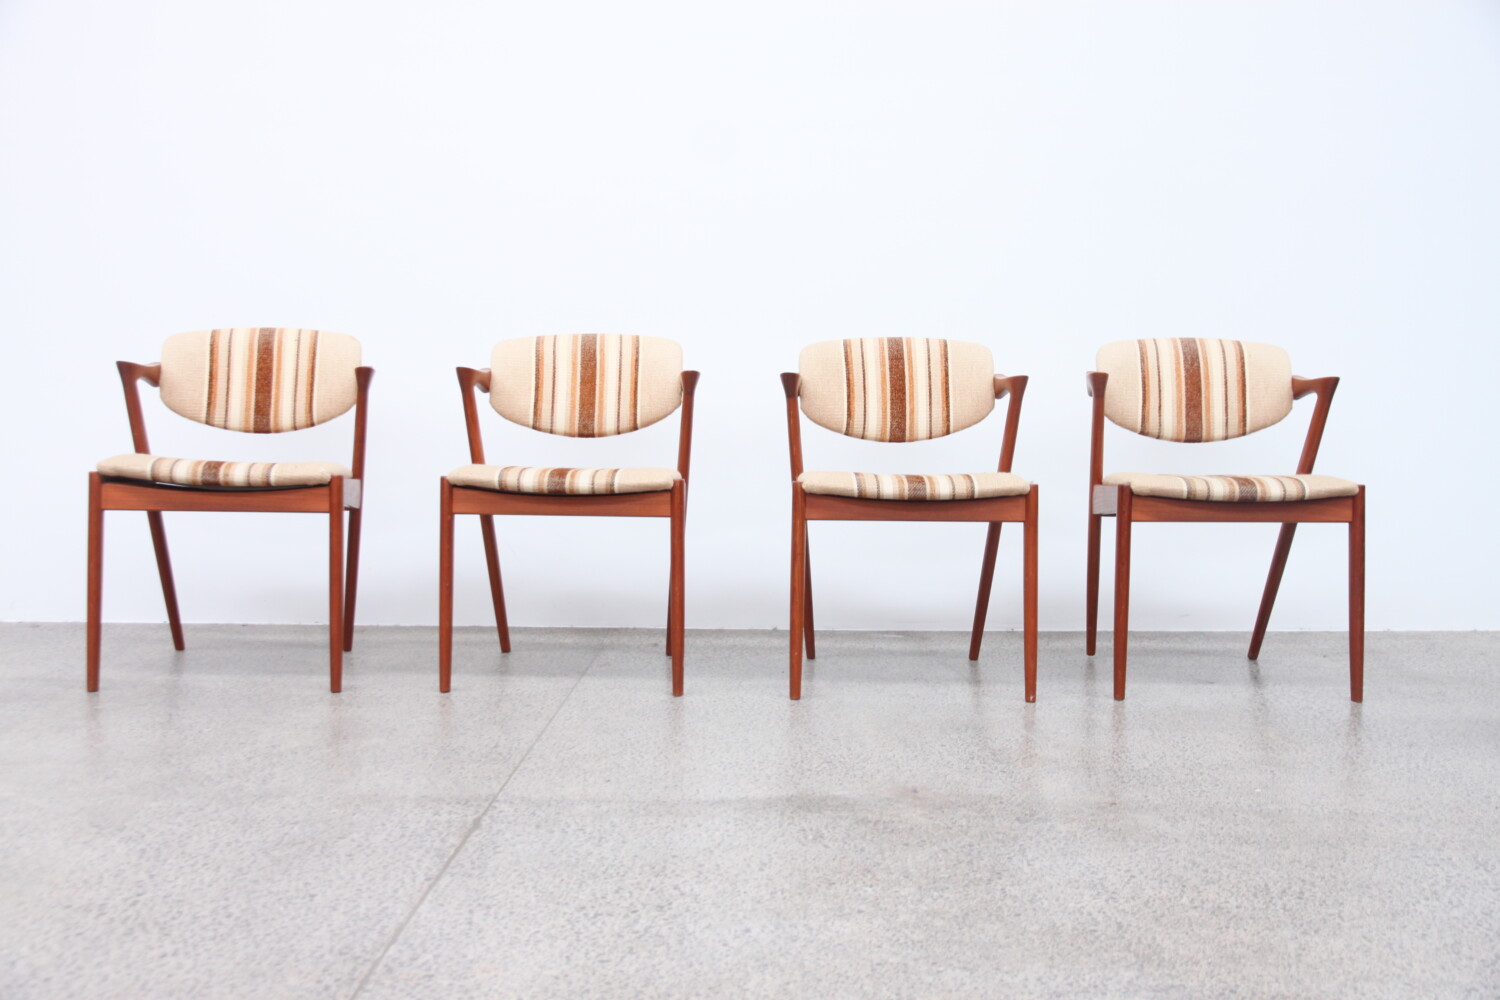 Z Chair by Kai Kristiansen sold